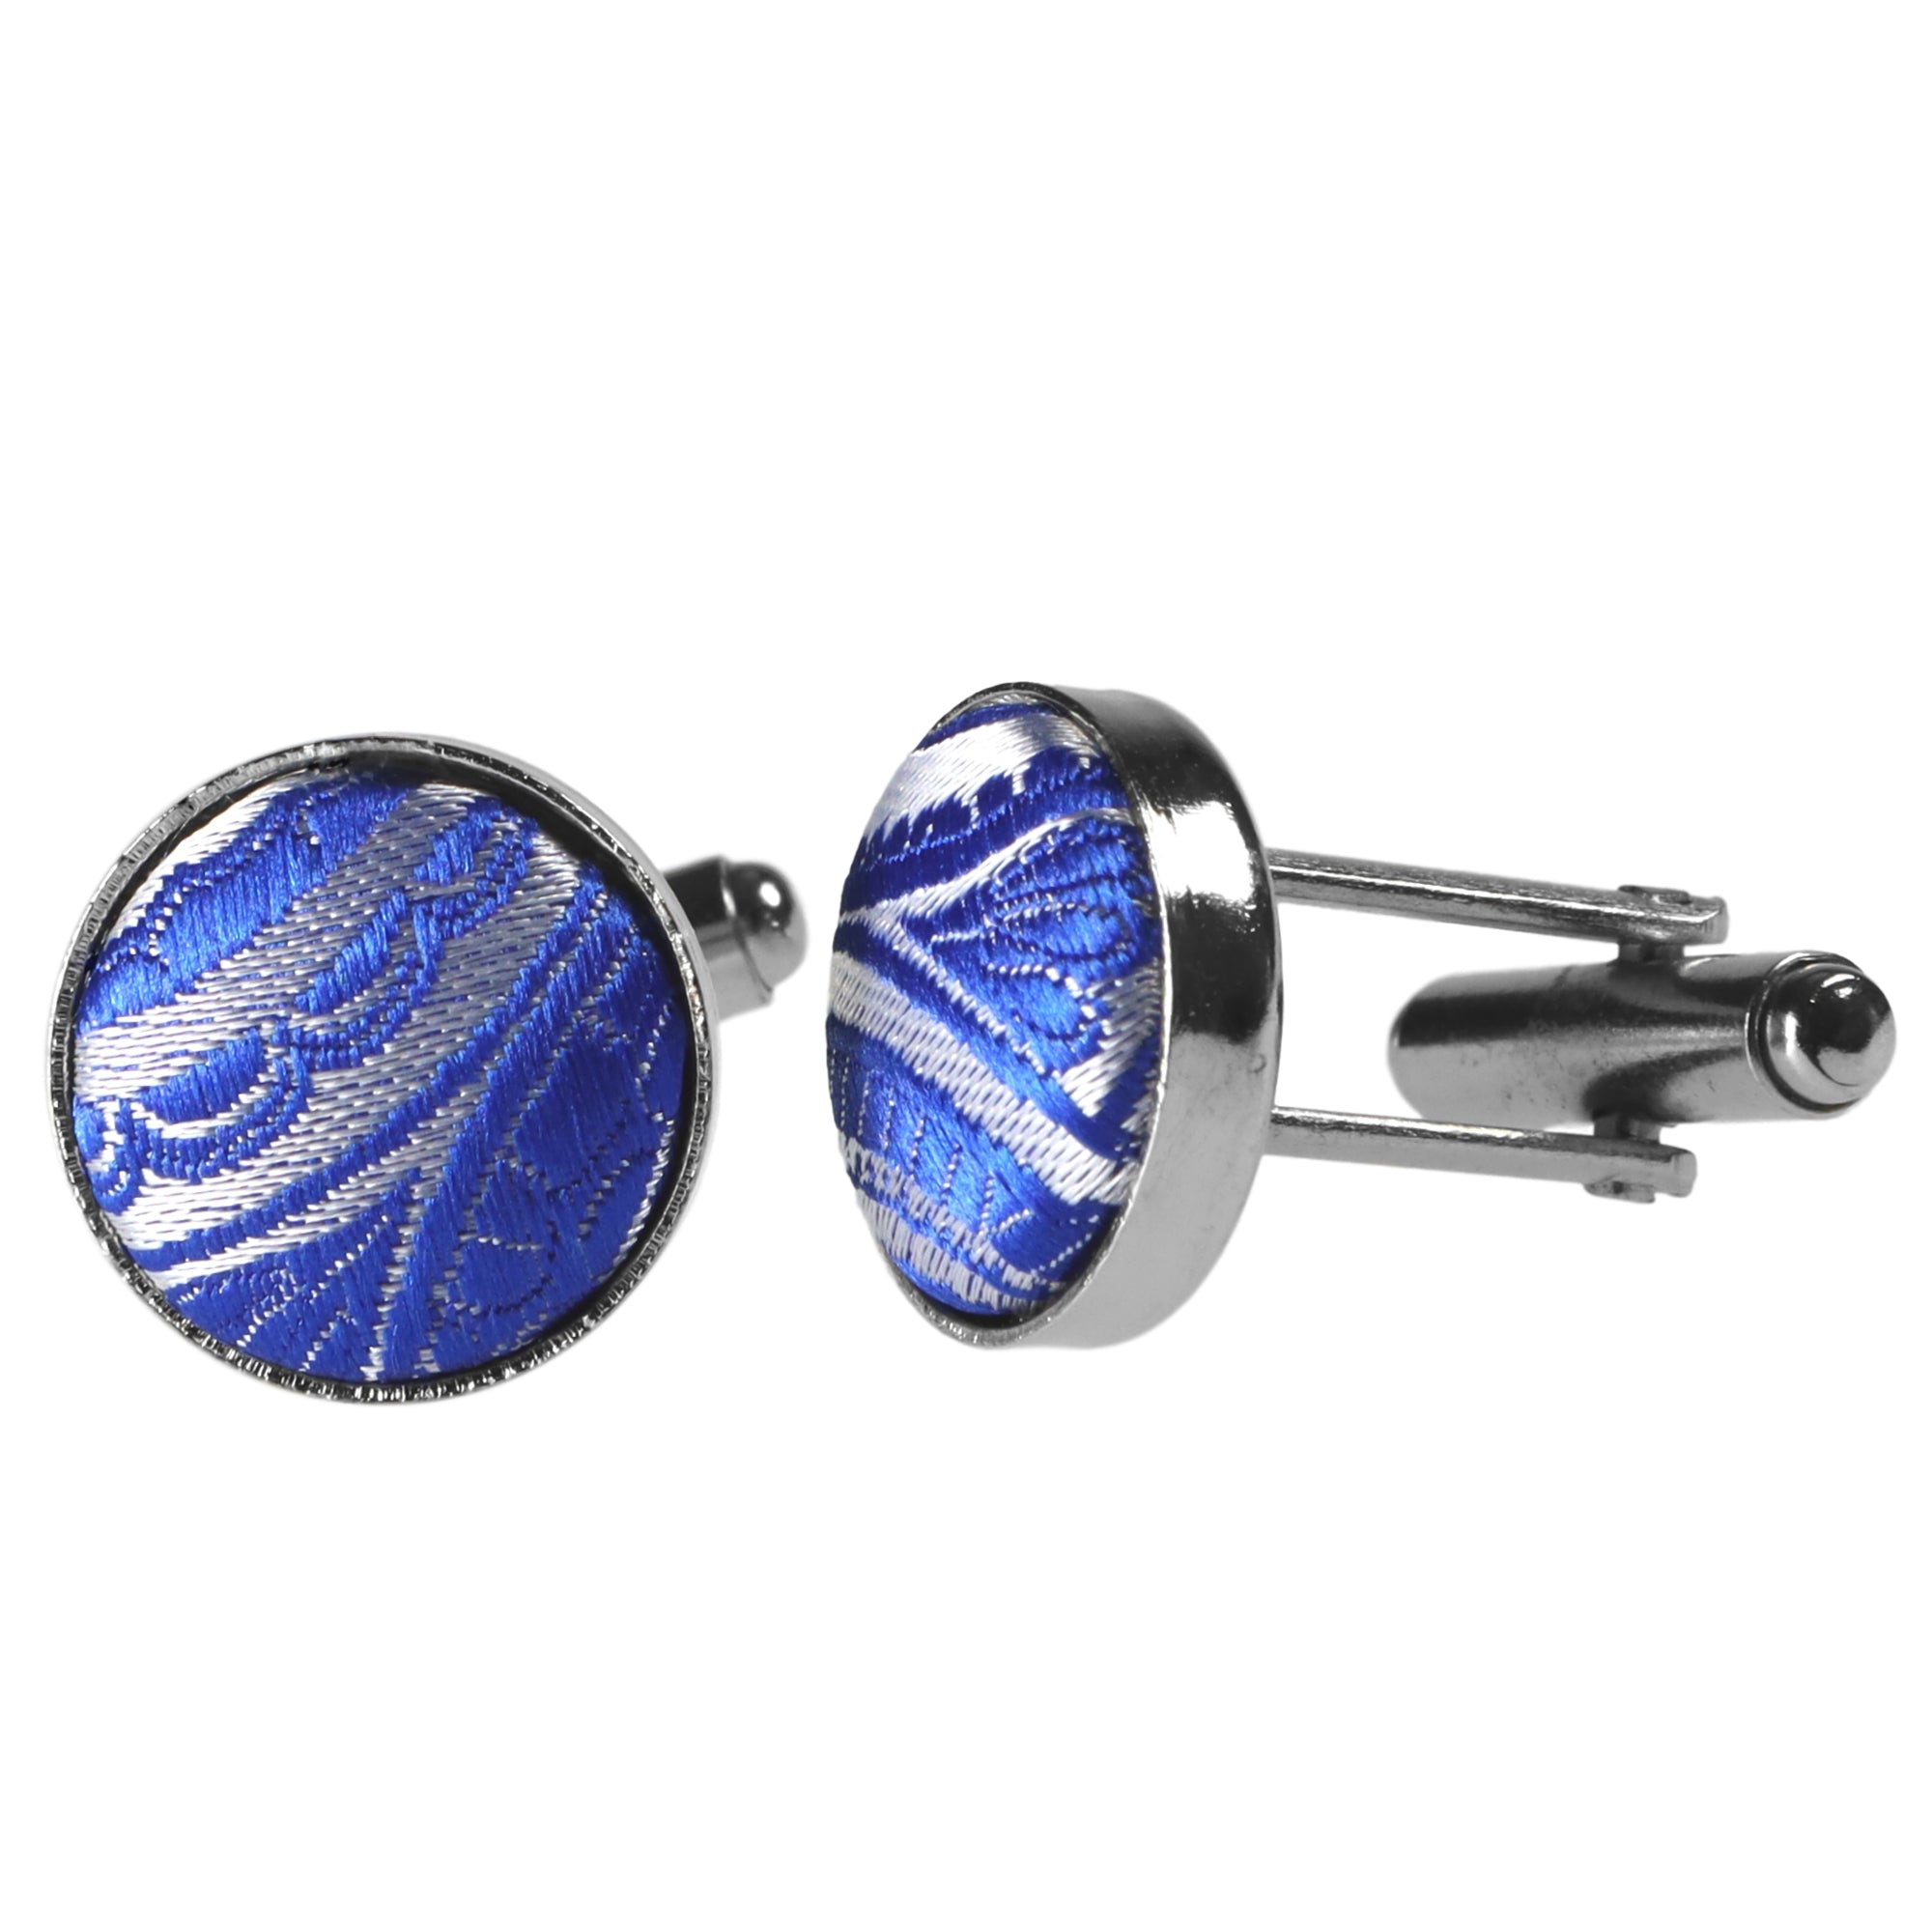 Krawatten | GASSANIshop.de Silber-Blaue für Sie Kaufen designt GASSANI - Paisley-Krawatte